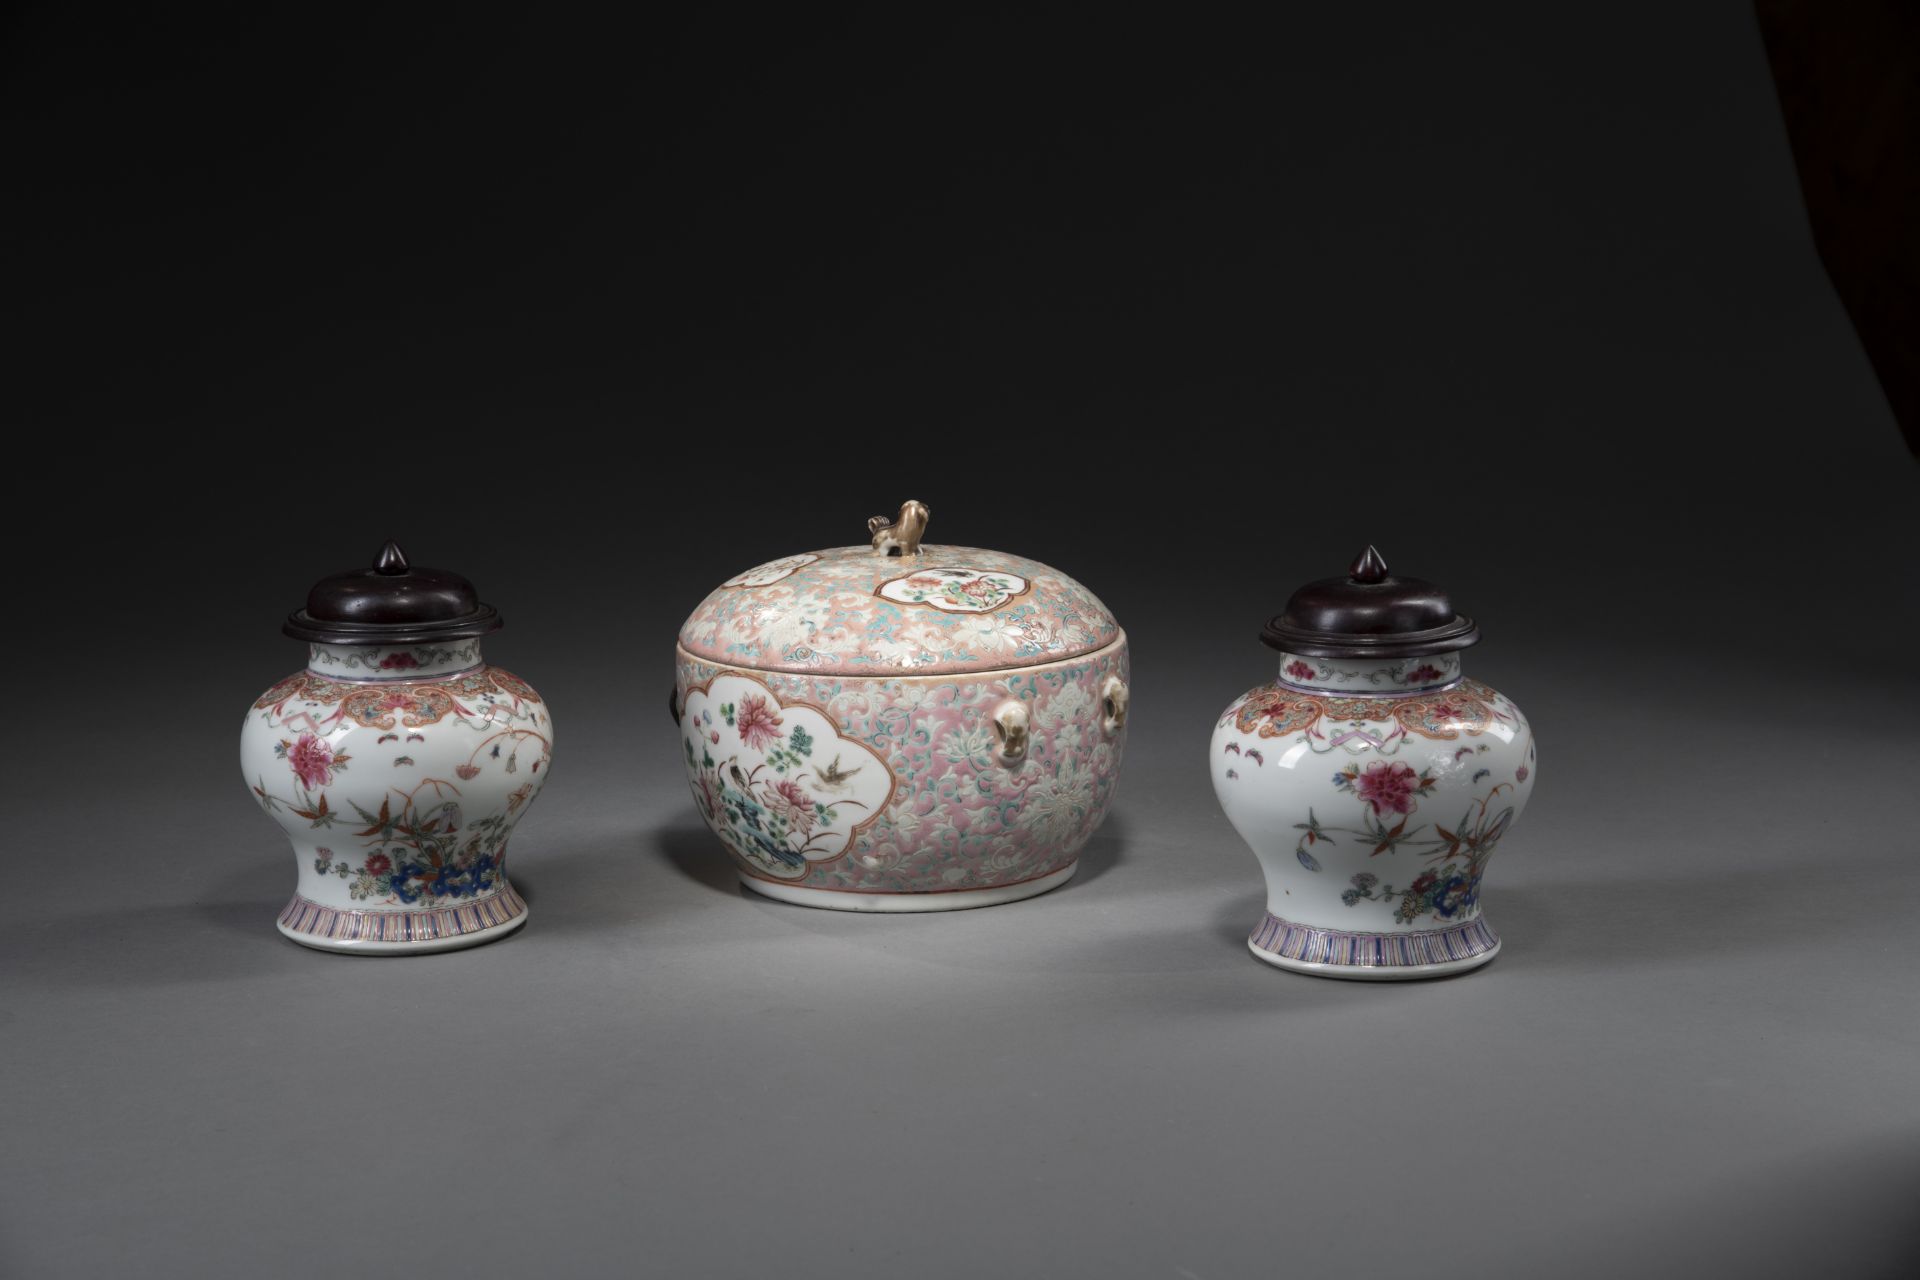 Eine Deckeldose und zwei Deckelvasen aus Porzellan mit floralem 'Famille rose'-Dekor - Bild 2 aus 4